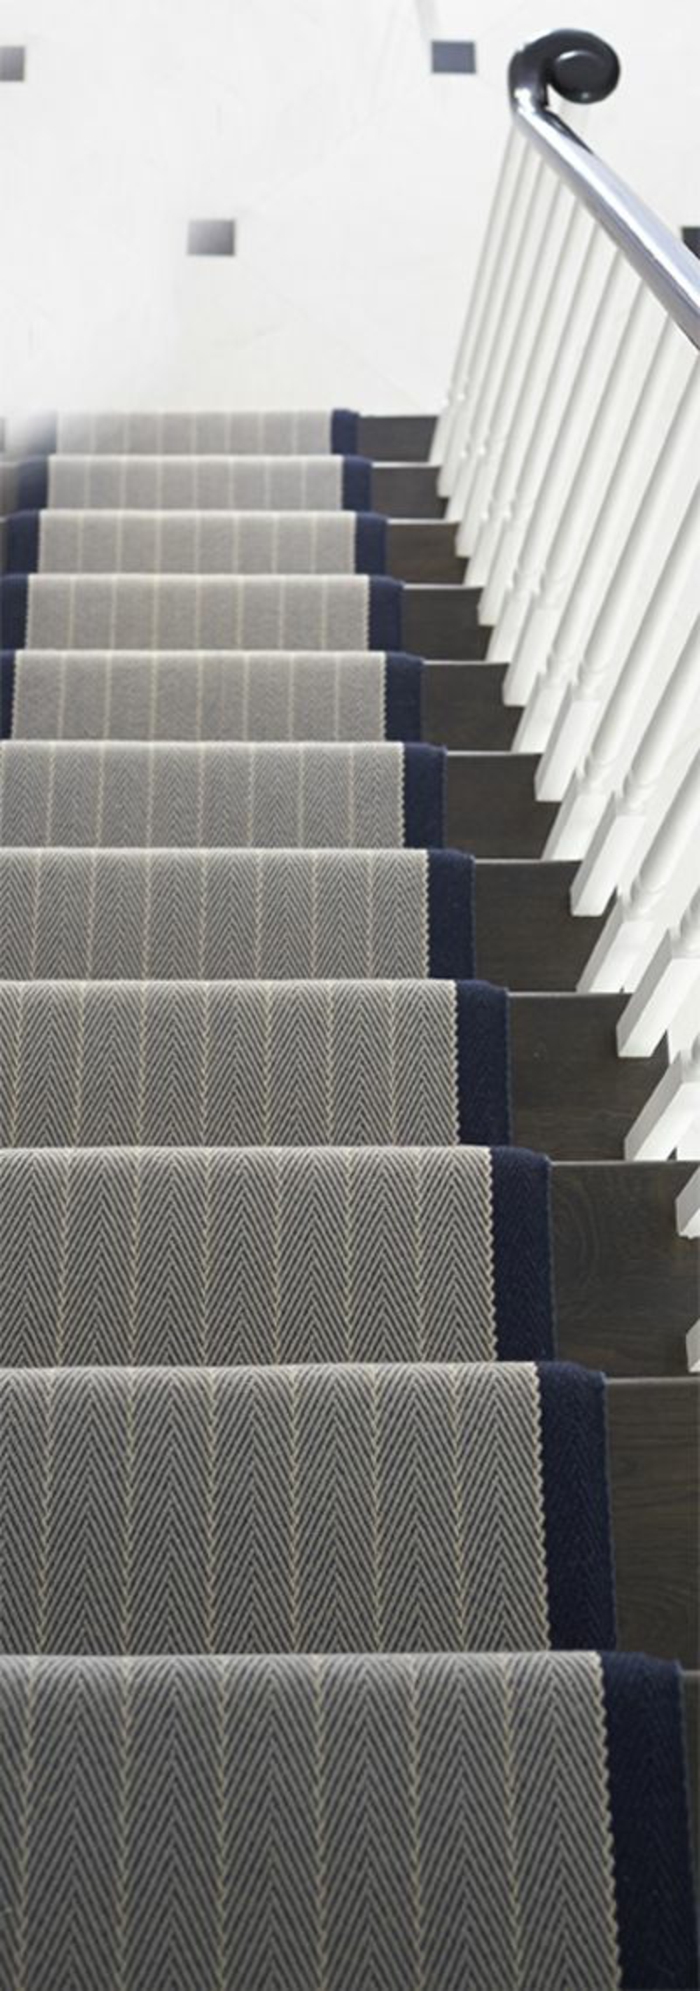 tapis-pour-escalier-gris-escalier-en-bois-gris-rampe-d-escalier-blanche-design-modenre